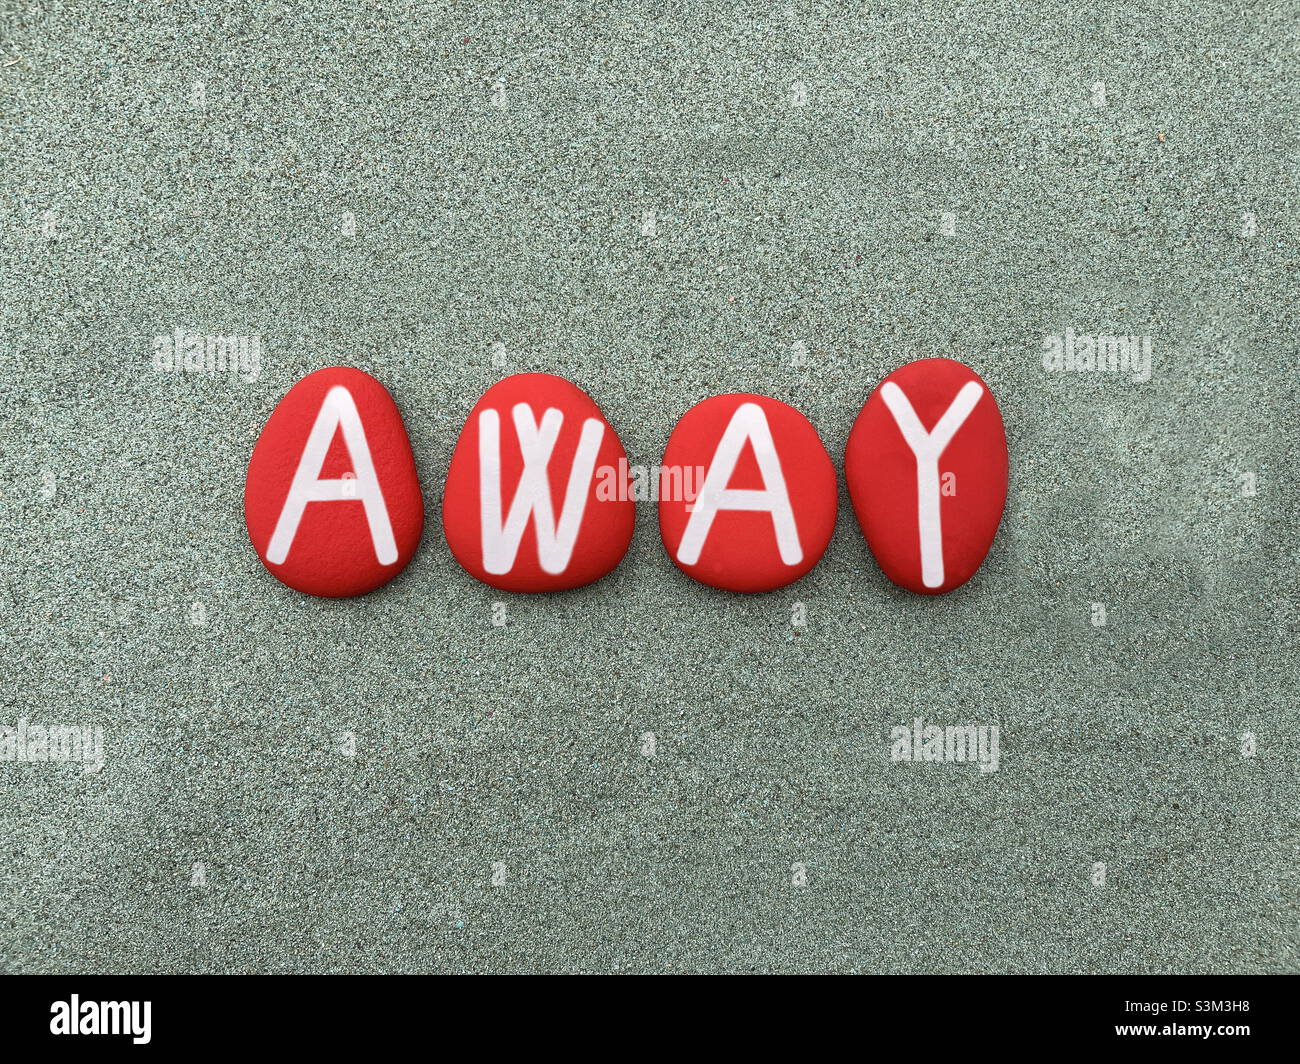 Lejos, mensaje creativo compuesto con letras de piedra roja pintadas a mano sobre arena verde Foto de stock